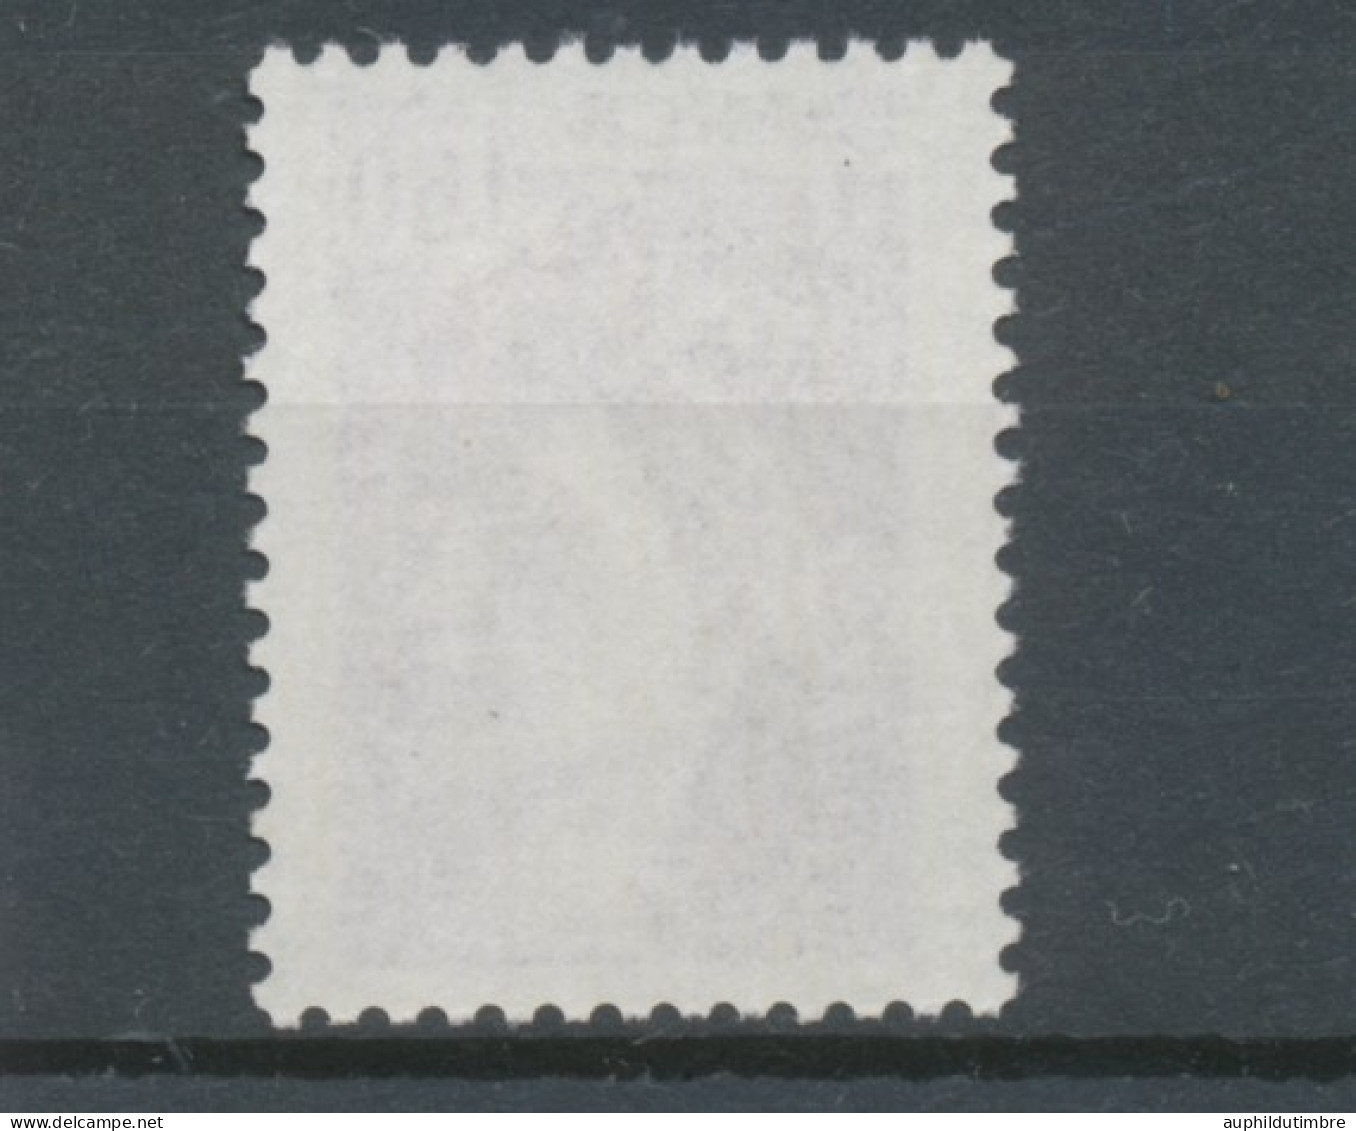 Type Sabine N°2060b 1f.60 Violet Gomme Tropicale Y2060b - Unused Stamps